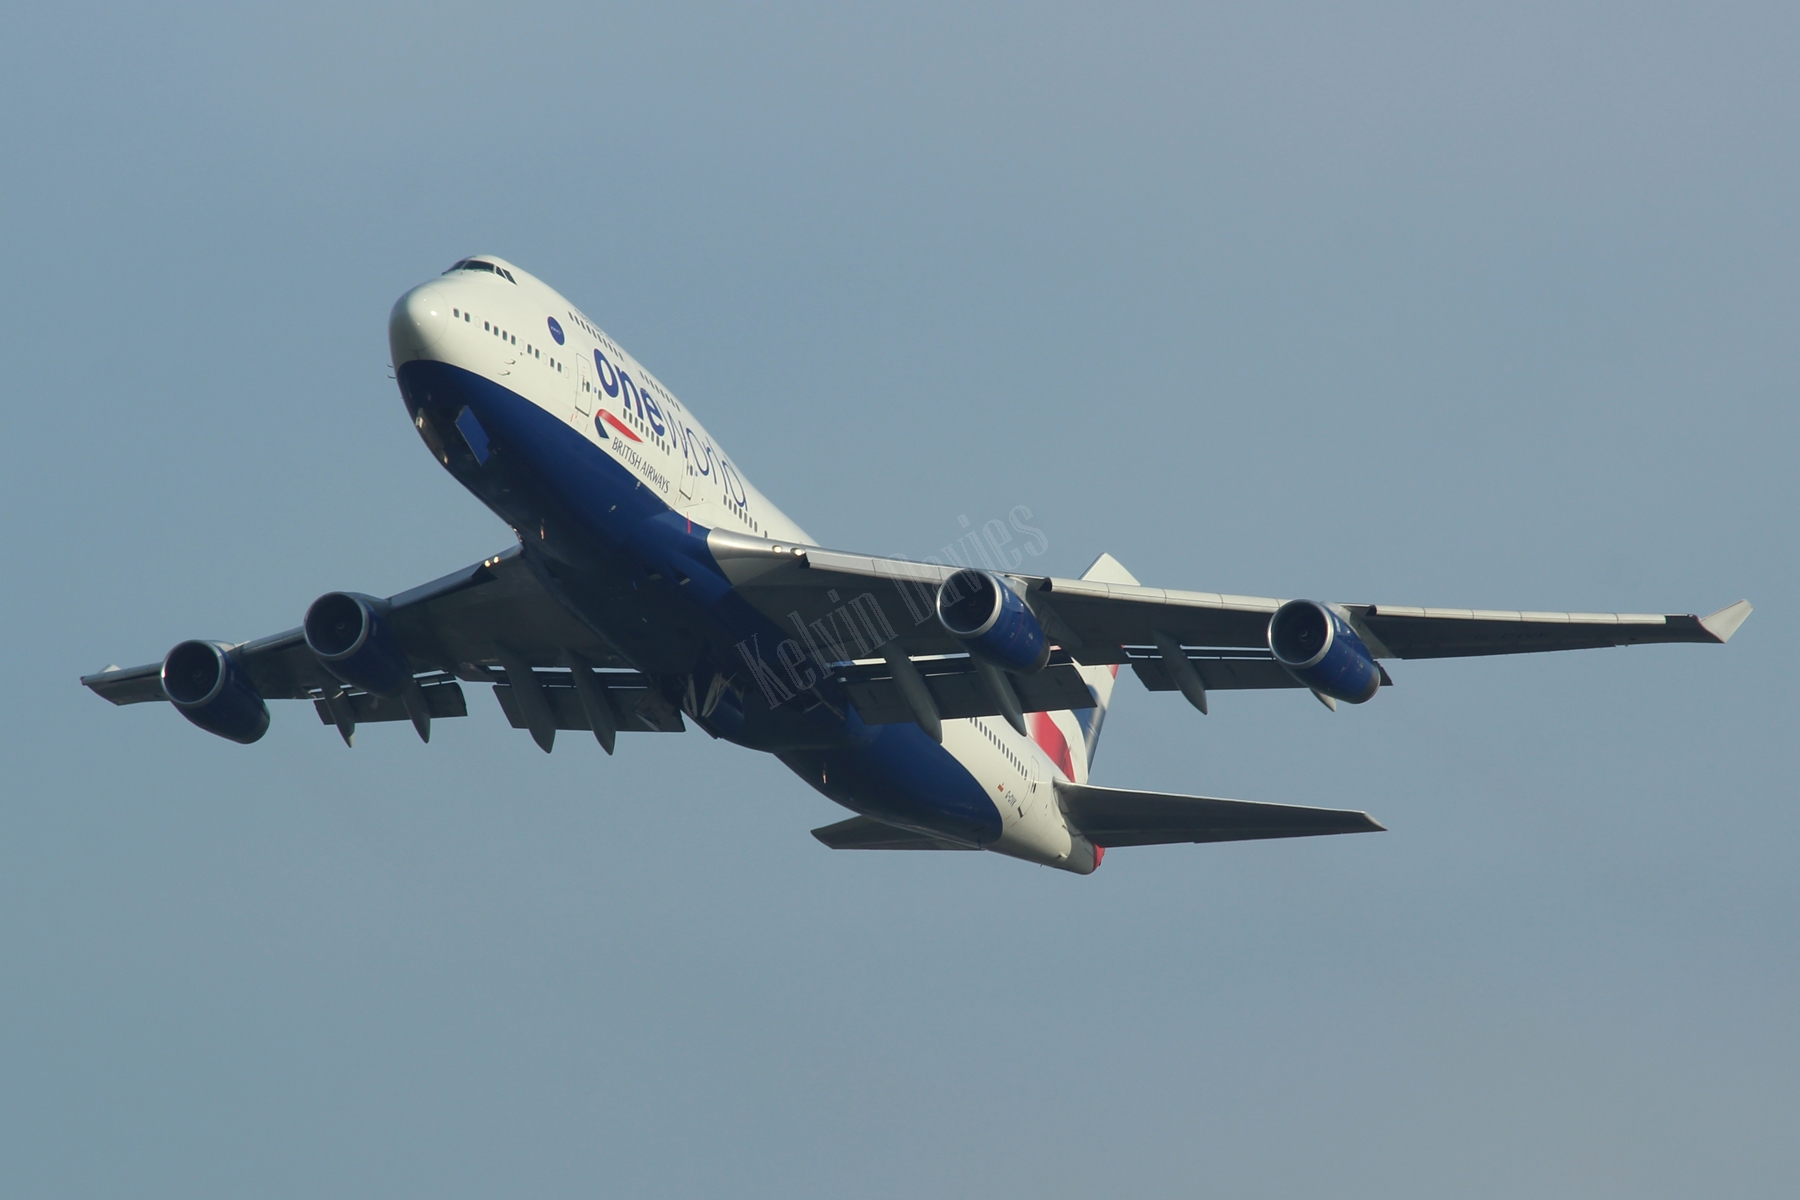 British Airways 747 G-CIVK